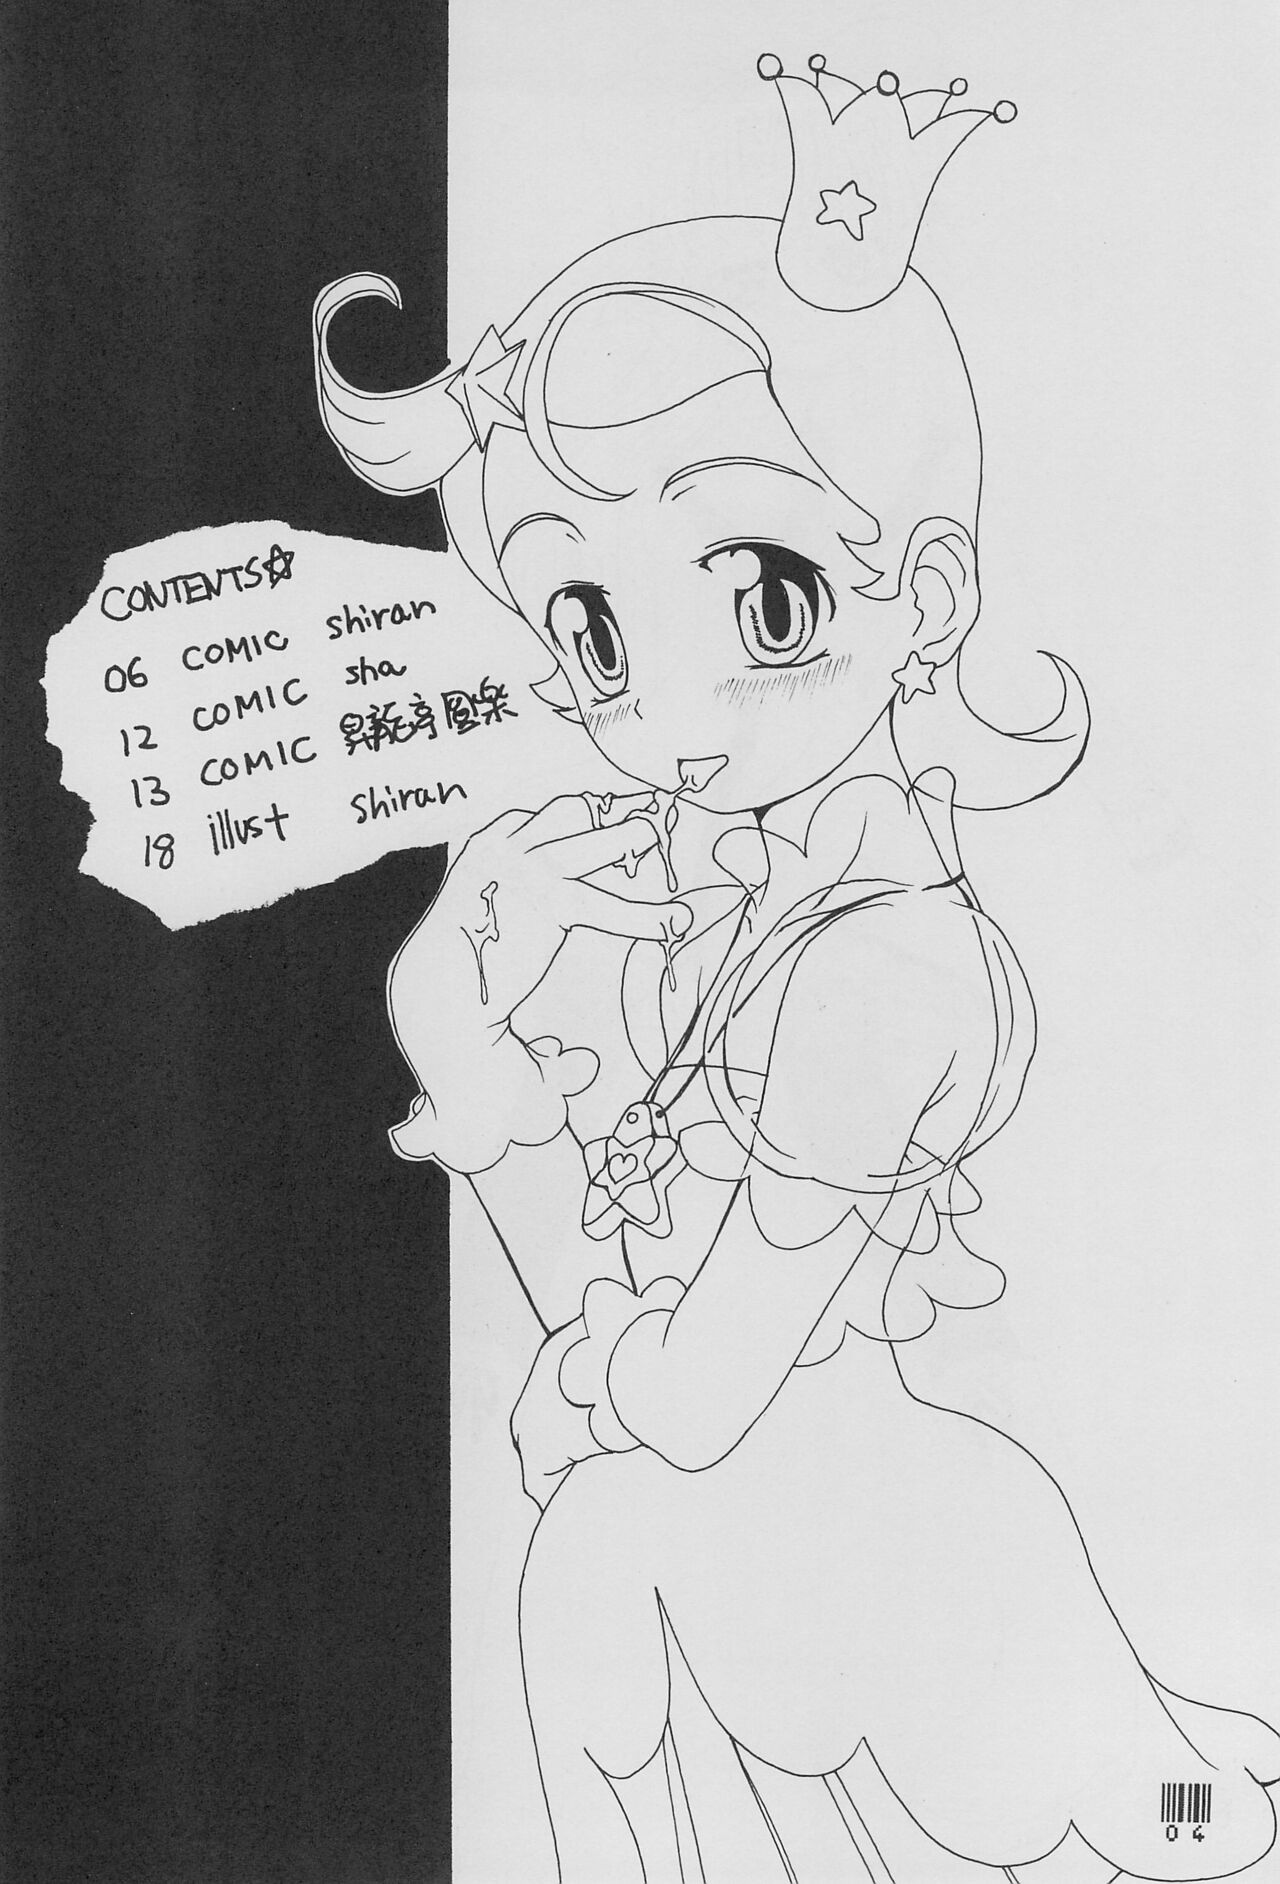 (Cレヴォ30) [昇龍亭、熾鸞堂 (昇龍亭圓楽、shiran)] コメット・ポケット☆ (Cosmic Baton Girl コメットさん☆)